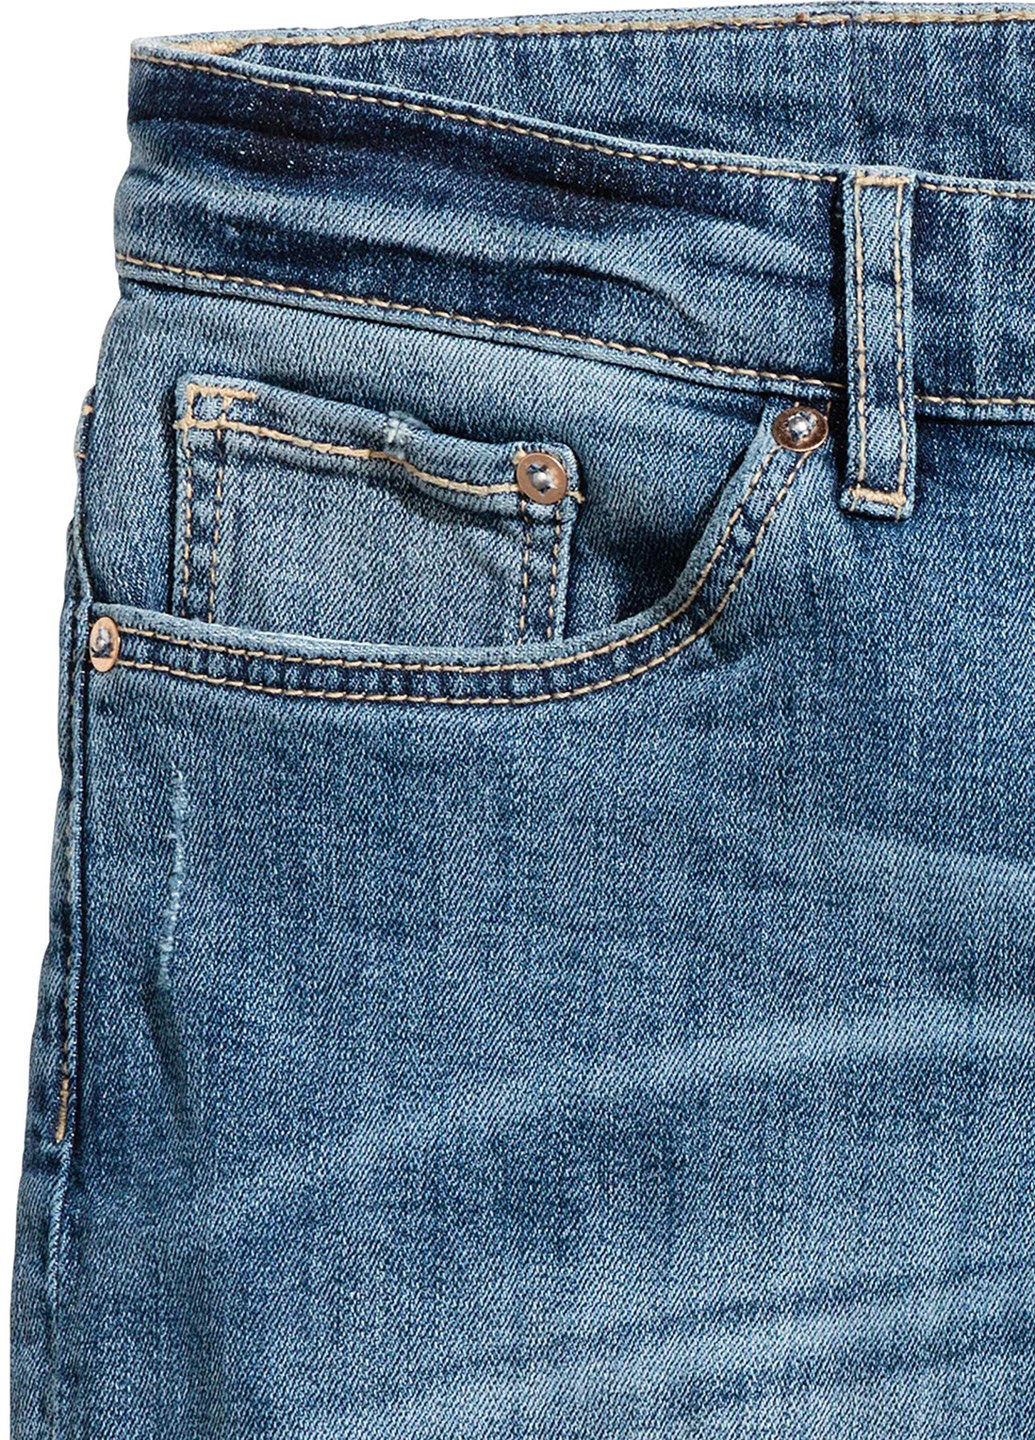 Шорты H&M однотонные синие джинсовые